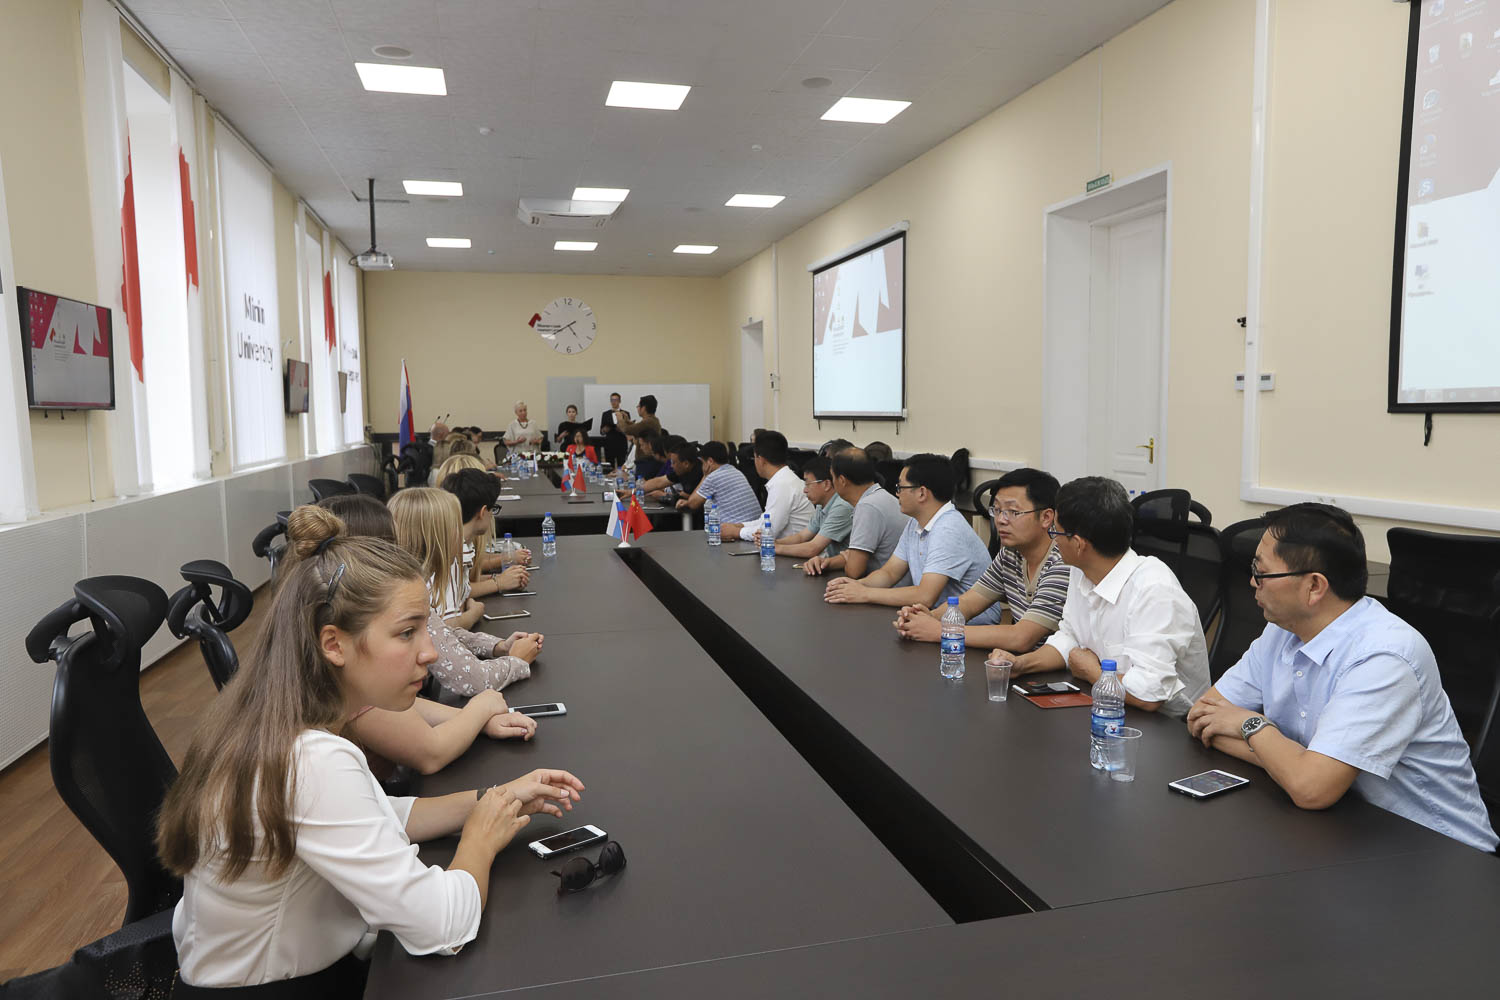 В Мининским университете завершились курсы повышения квалификации для преподавателей из Китая